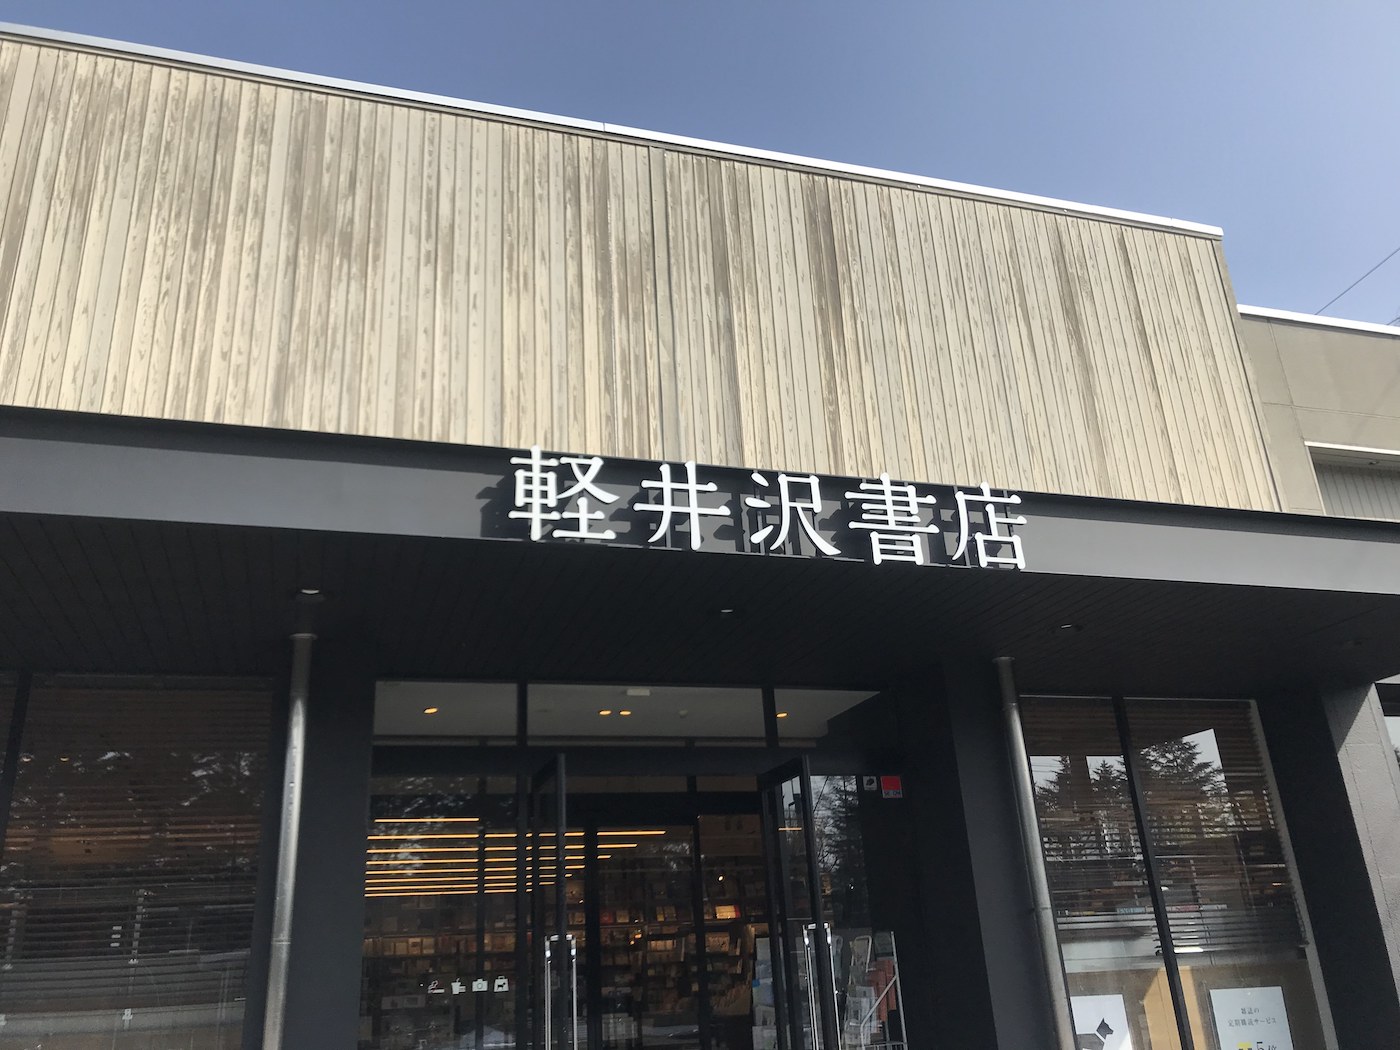 軽井沢の街の本屋さん「軽井沢書店」